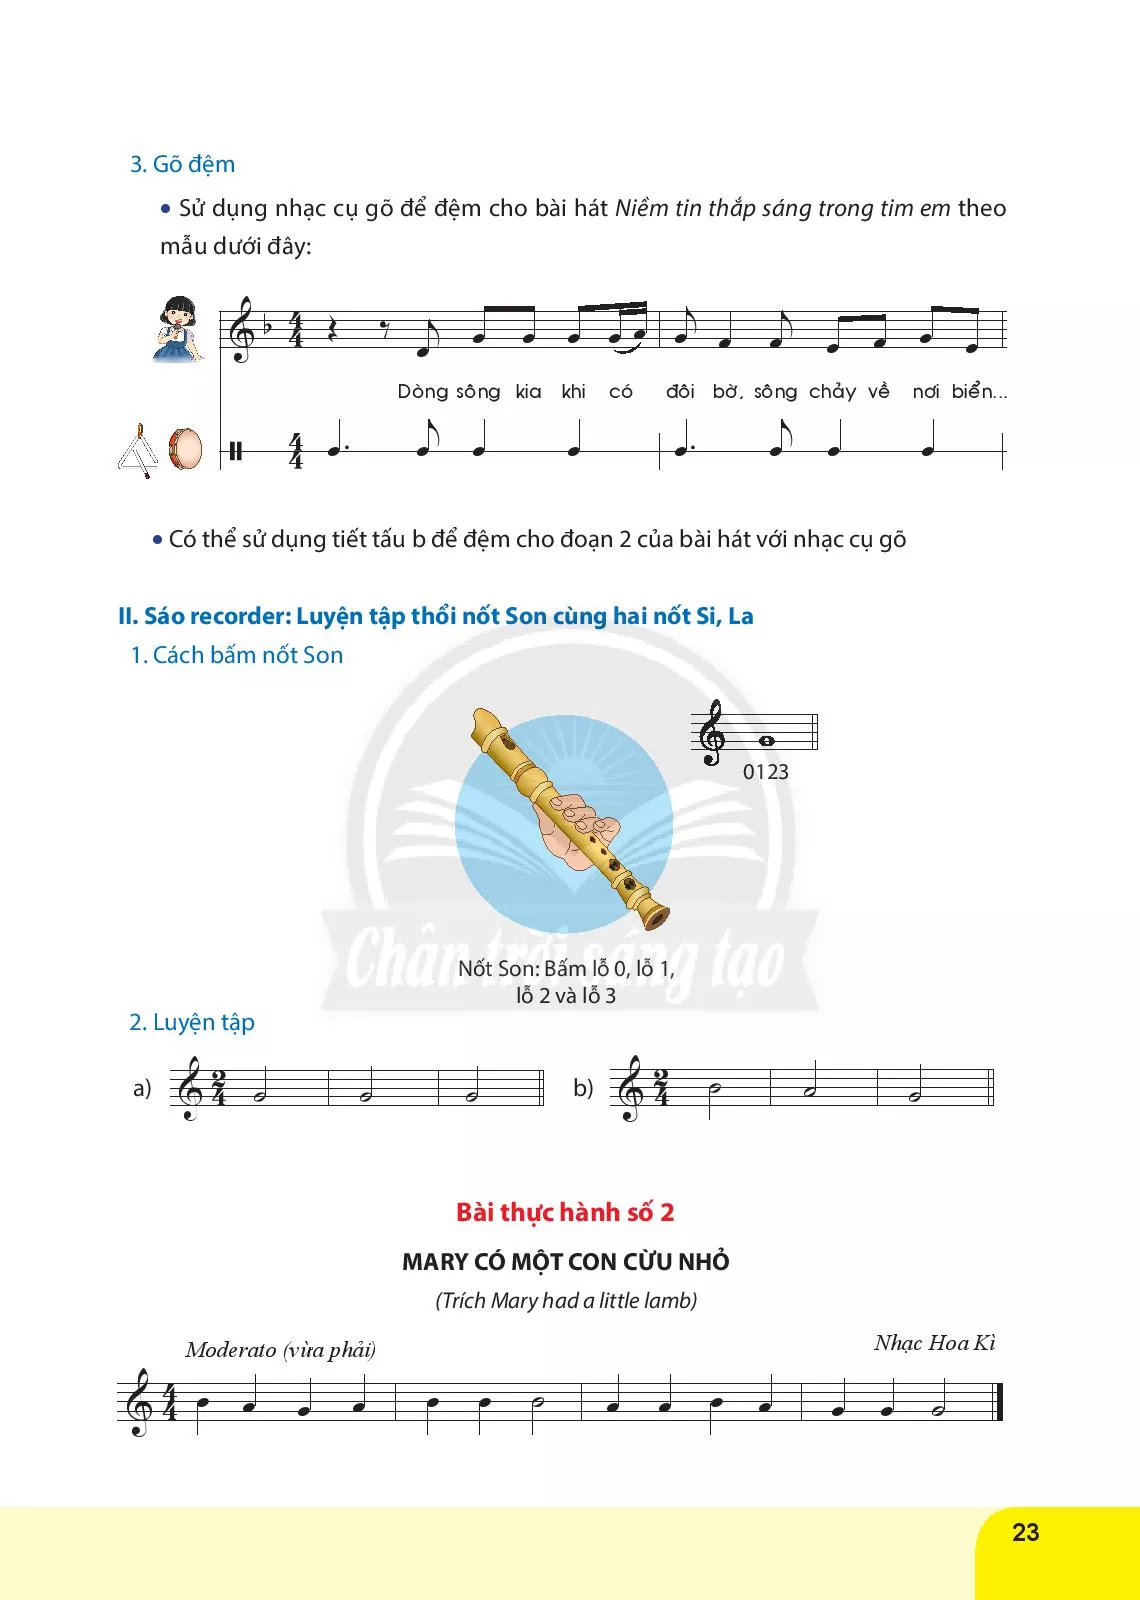 Nhạc cụ tiết tấu. Bài thực hành số 3 Nhạc cụ giai điệu: Bài thực hành số 2 nhạc cụ sáo recorder hoặc kèn phím 